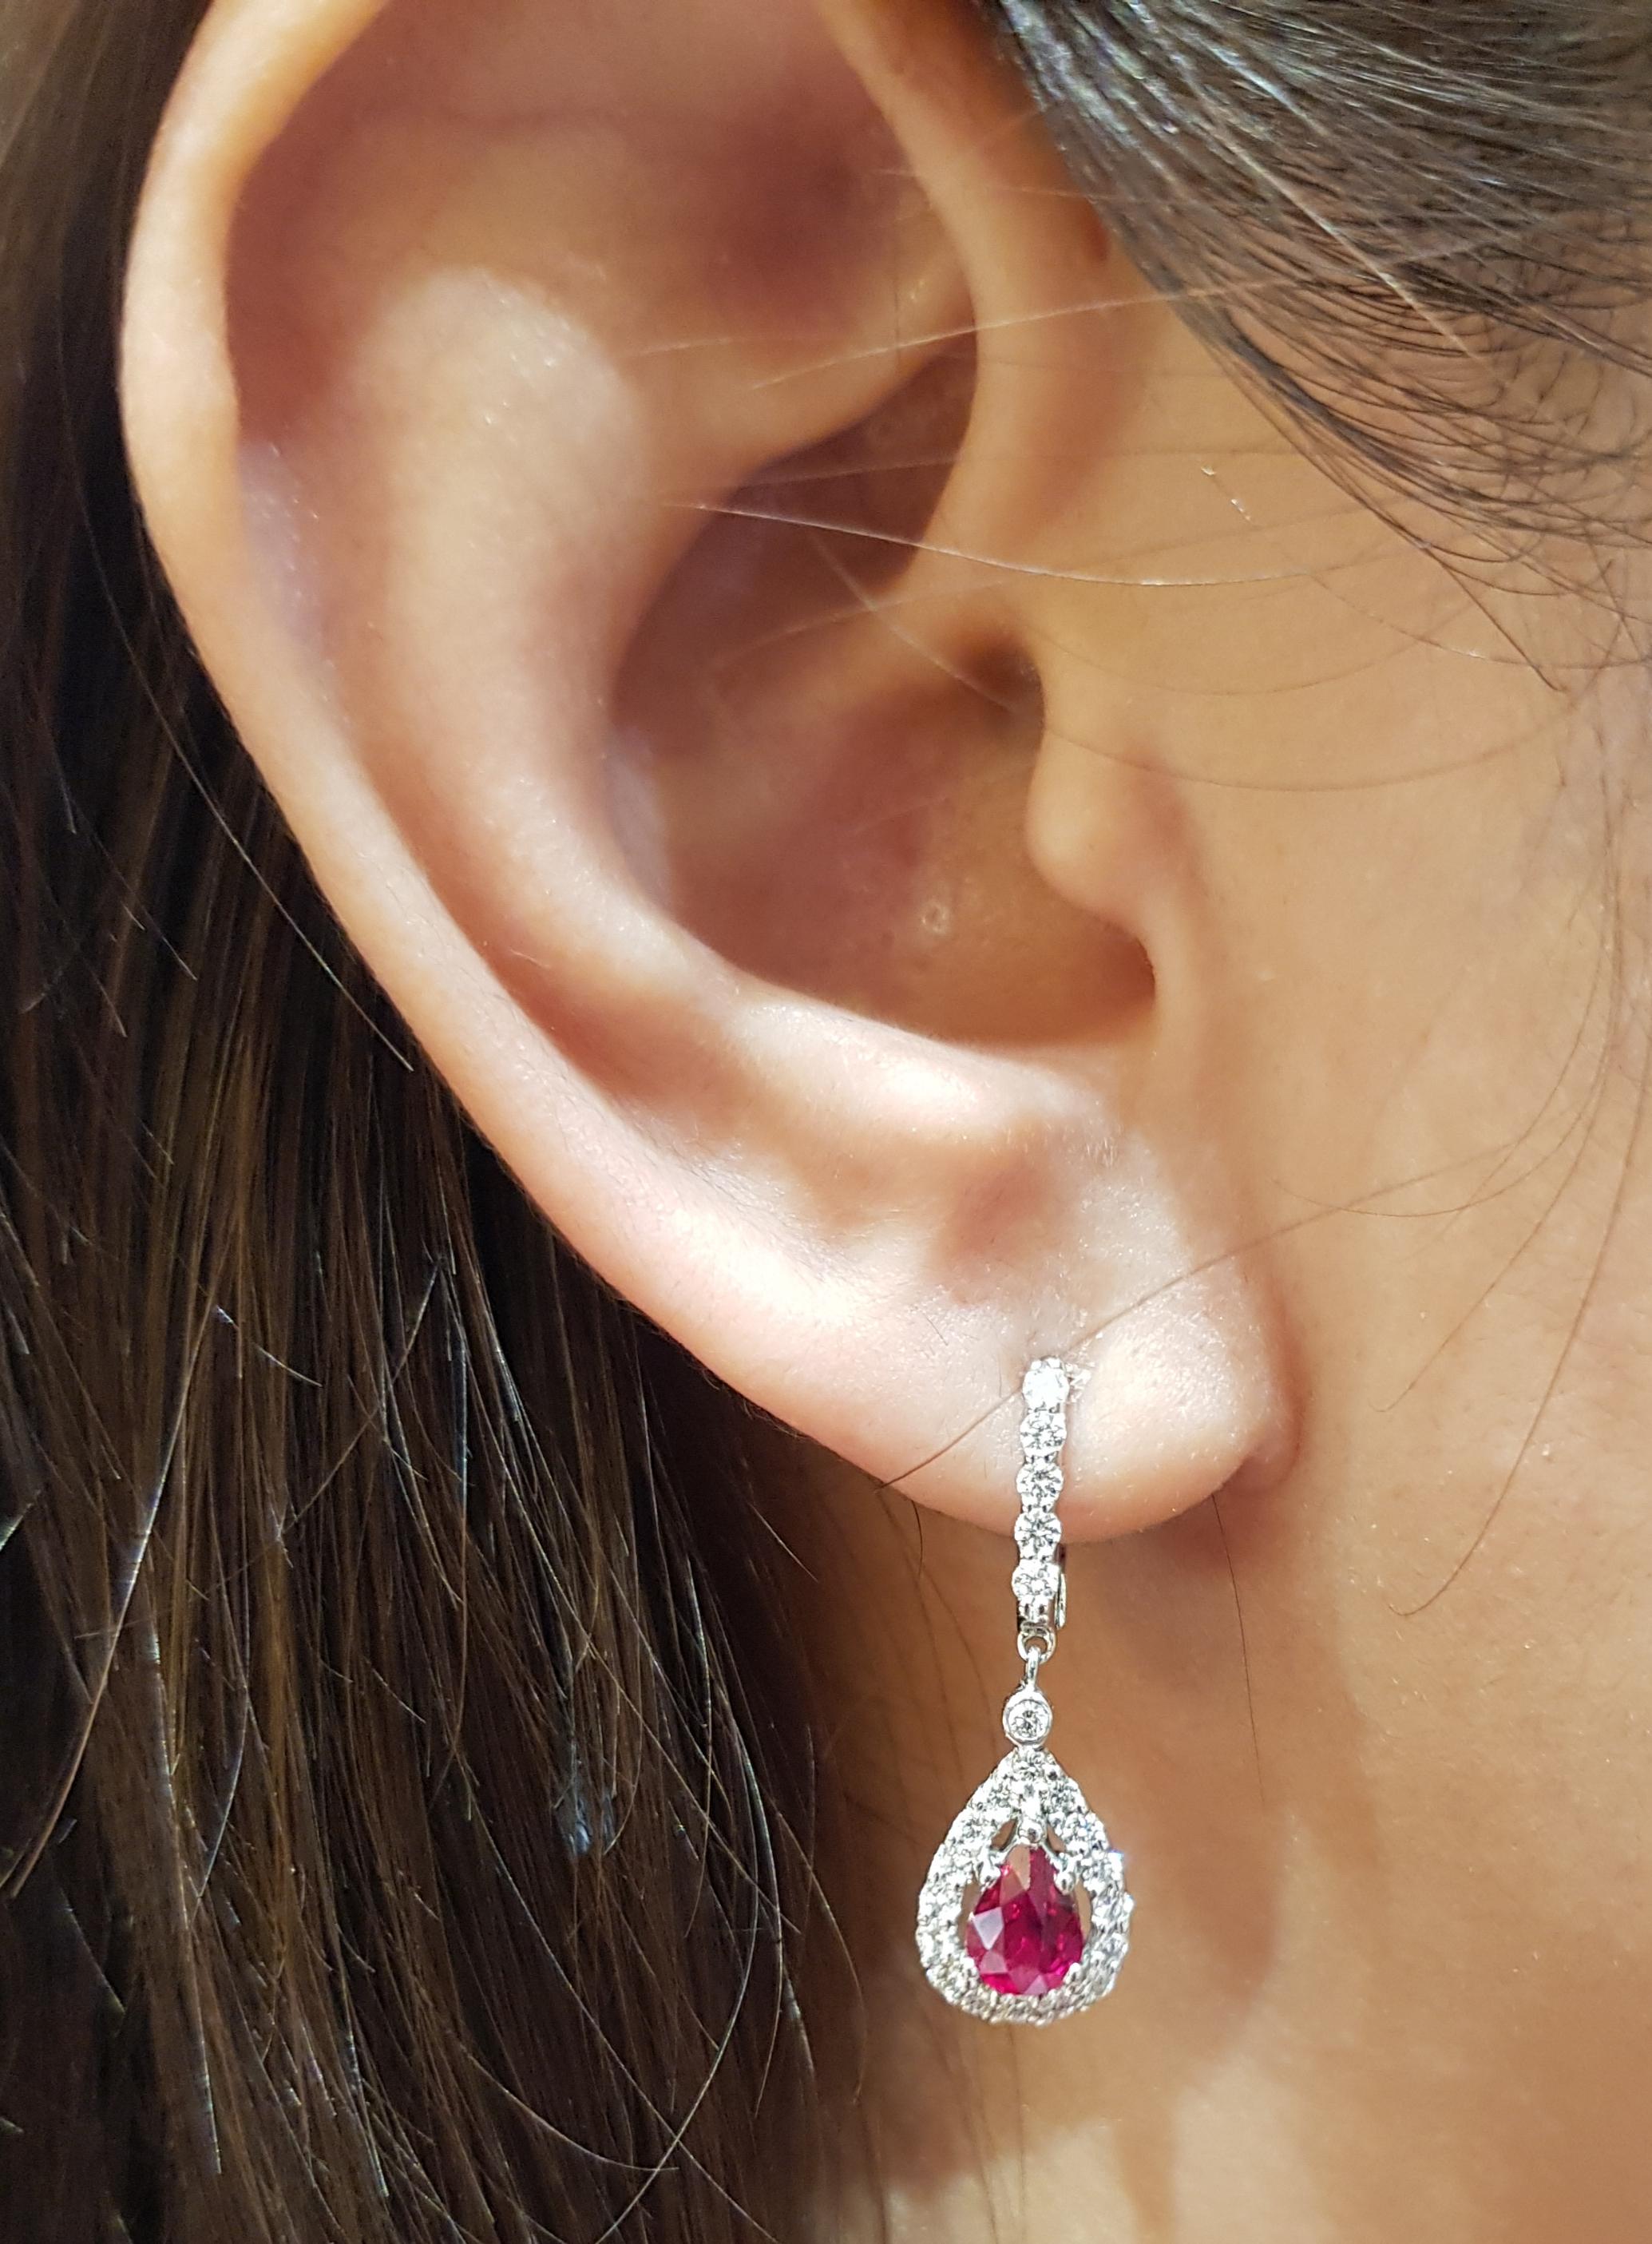 Boucles d'oreilles composées d'un rubis de 2,95 carats et d'un diamant de 0,43 carat sertis dans une monture en or blanc 18 carats

Largeur :  0.9 cm 
Longueur : 3,0 cm
Poids total : 4,37 grammes

